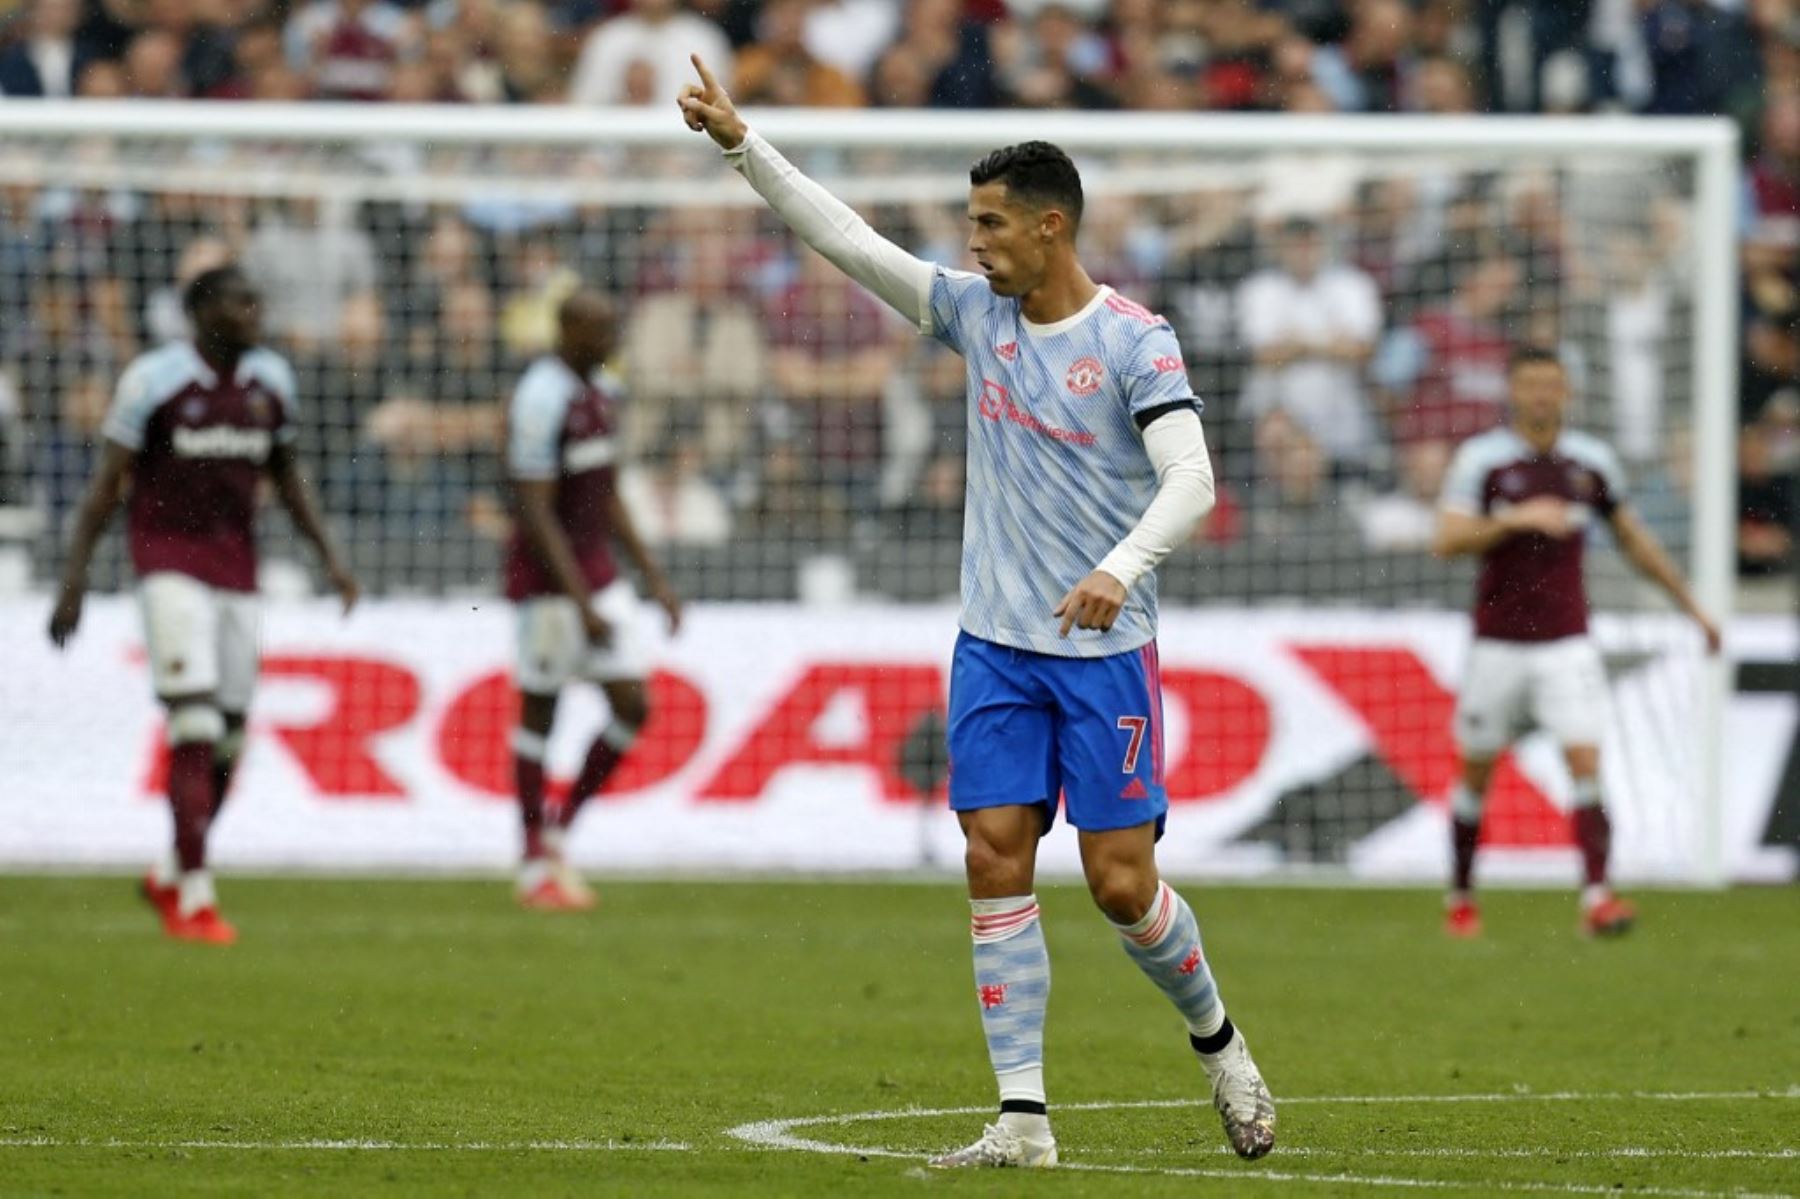 Cristiano Ronaldo lleva cuatro goles anotados en tres partidos jugados con la camiseta del Manchester United